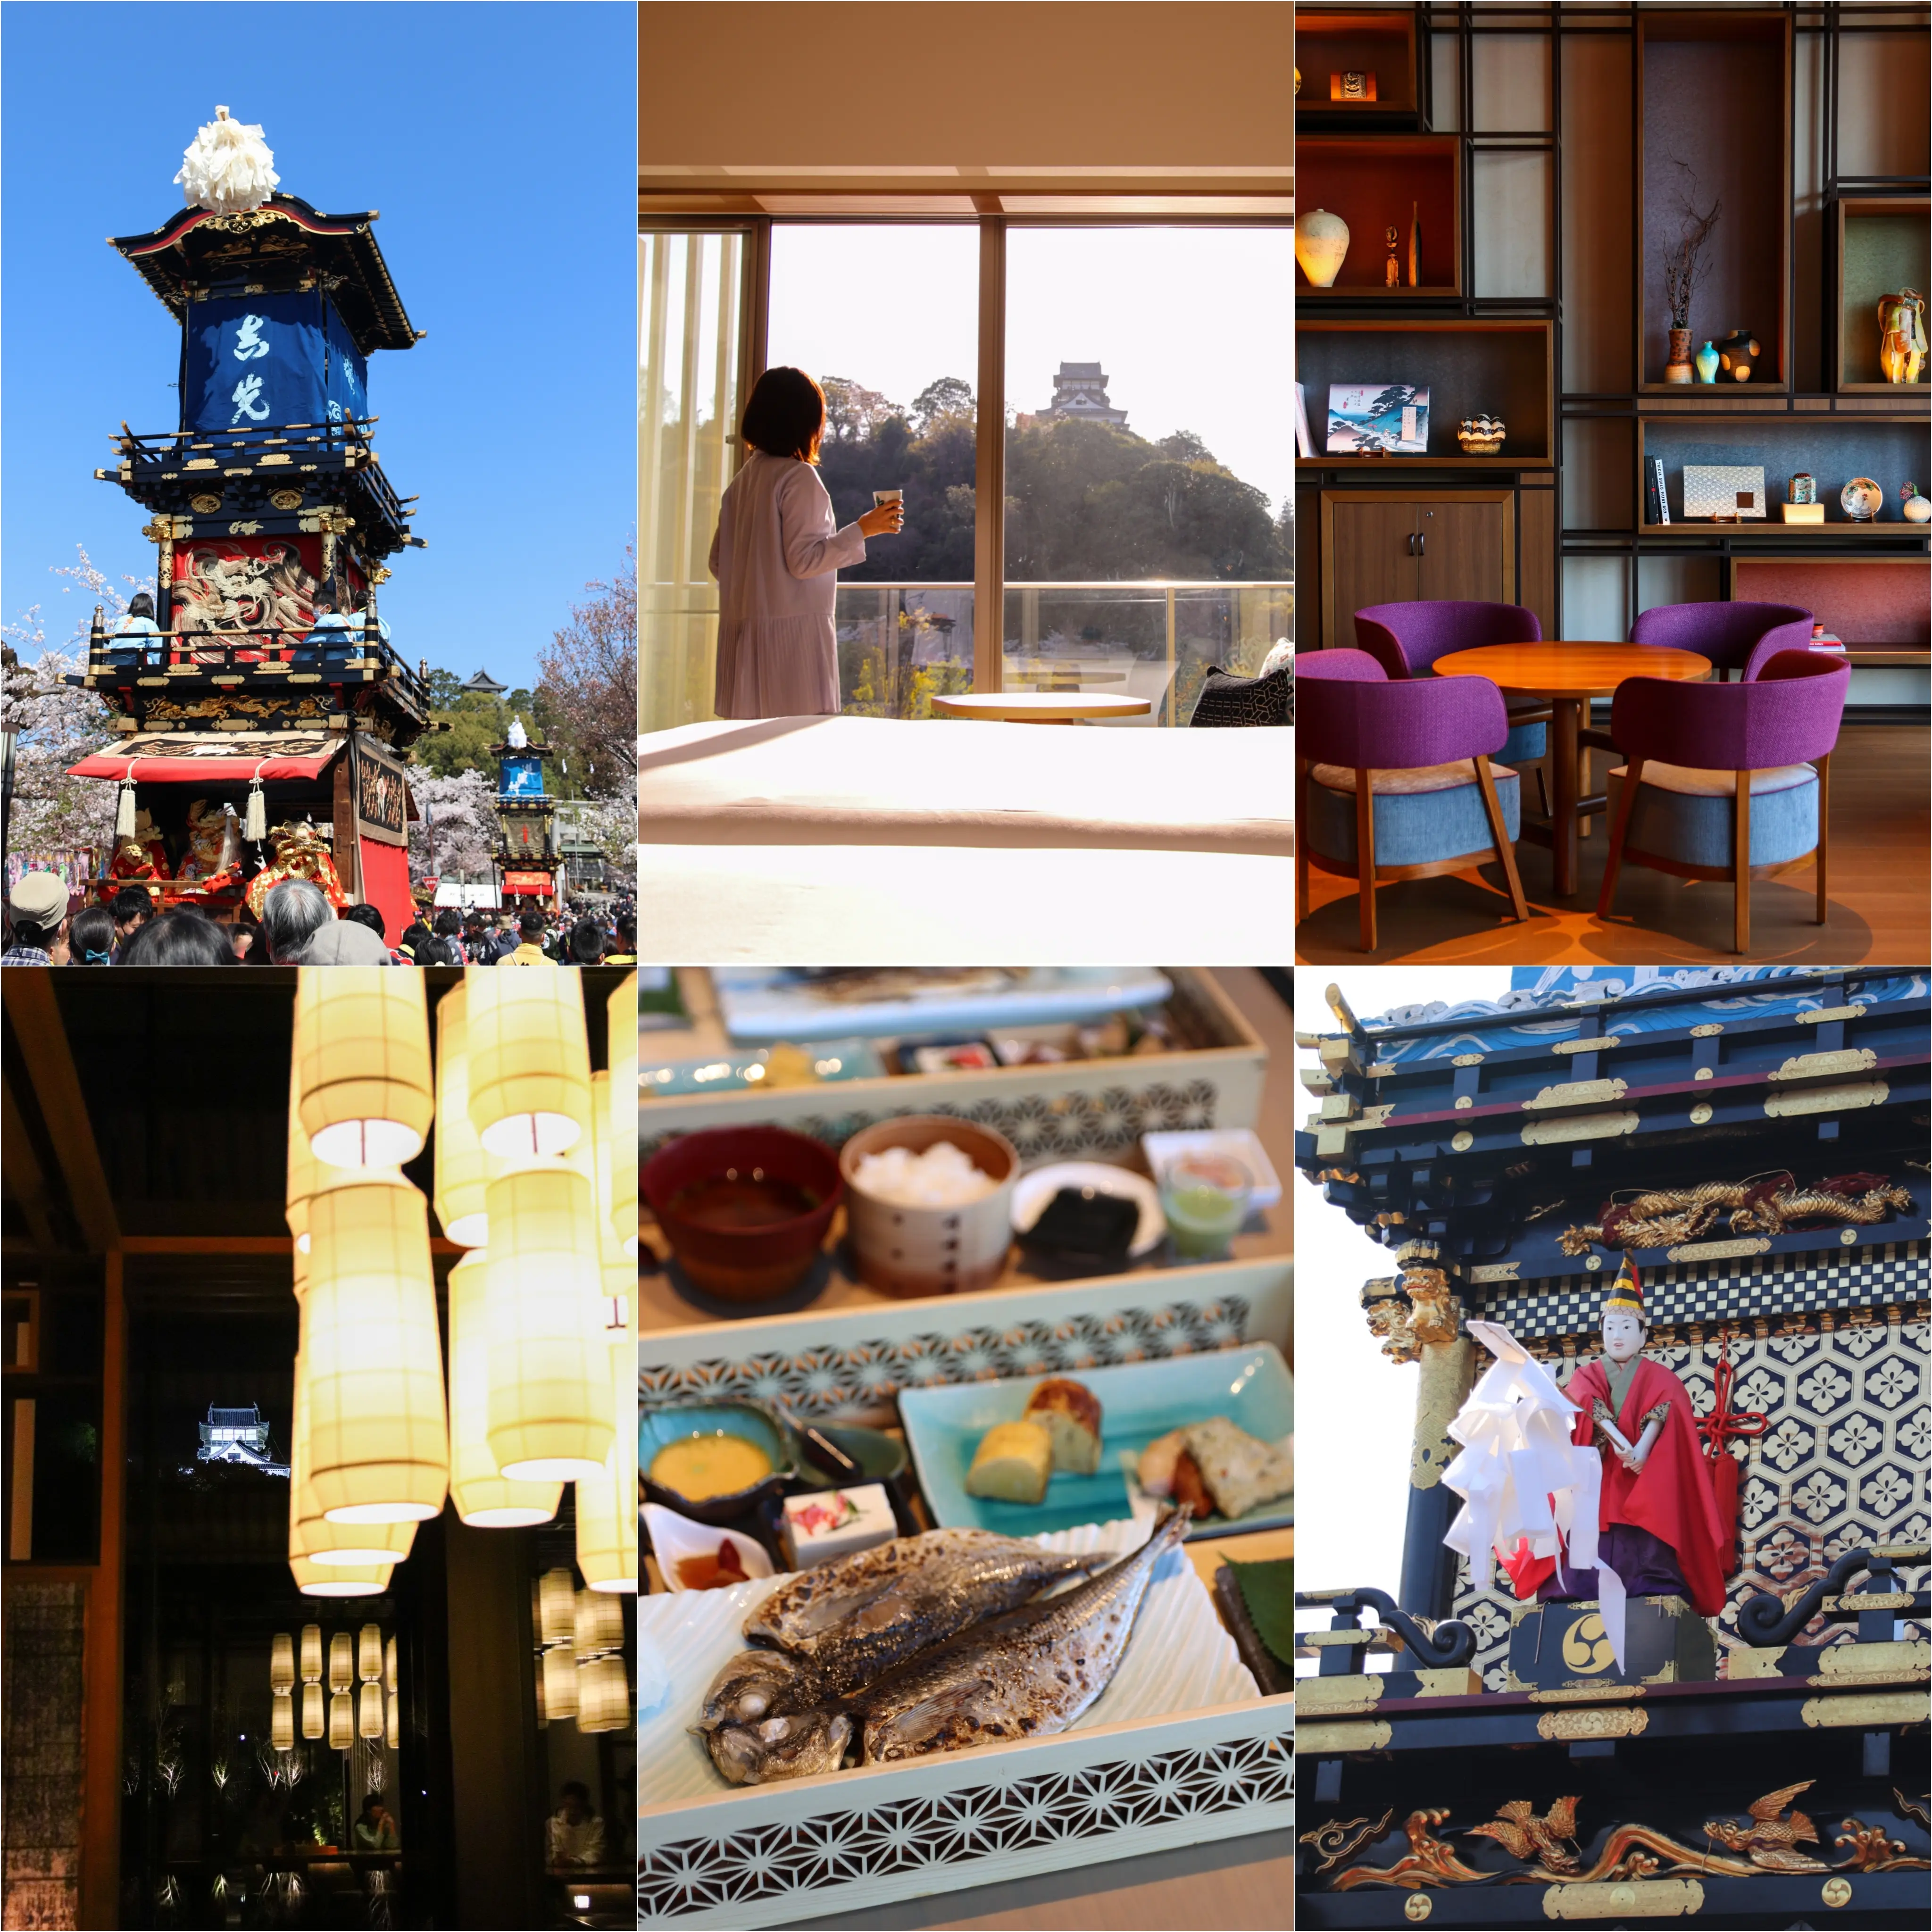 無形文化遺産の旅・愛知県：第389回「犬山祭」 ］犬山城を一望する